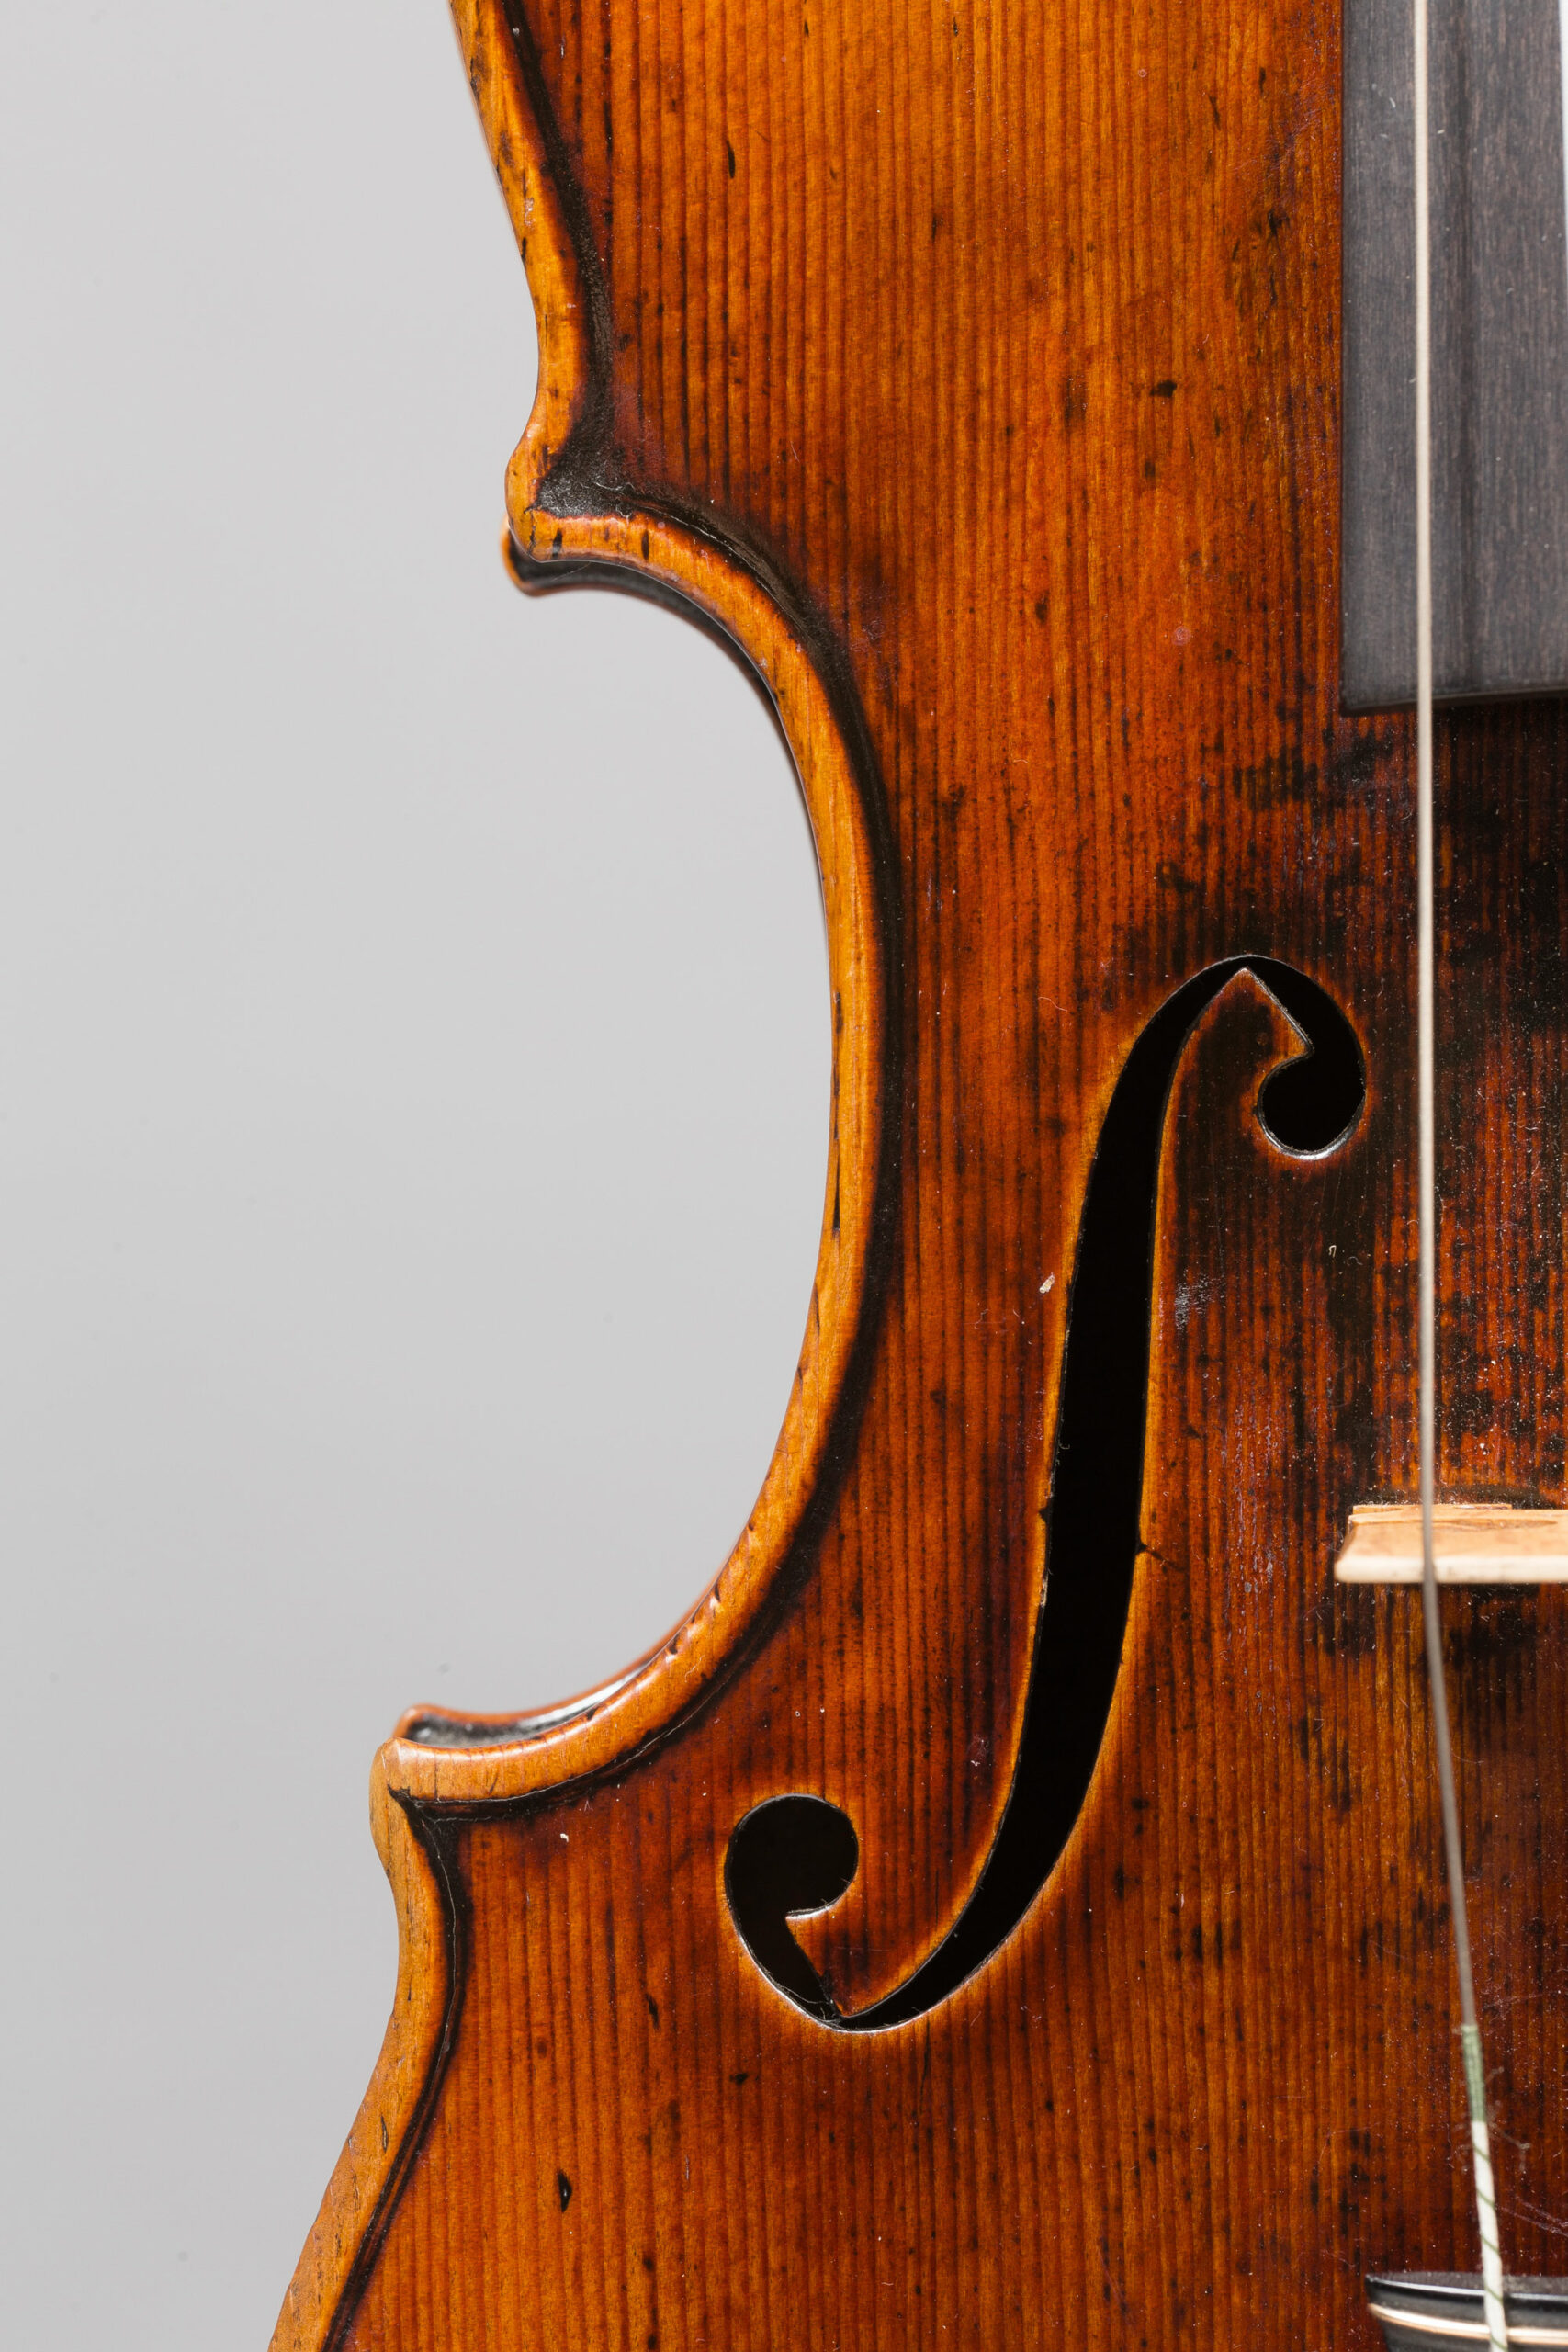 Exceptionnel violon de Jean-Baptiste VUILLAUME Collection Bernard Millant Instrument mis en vente par Vichy Enchères le 29 novembre 2017 © Christophe Darbelet